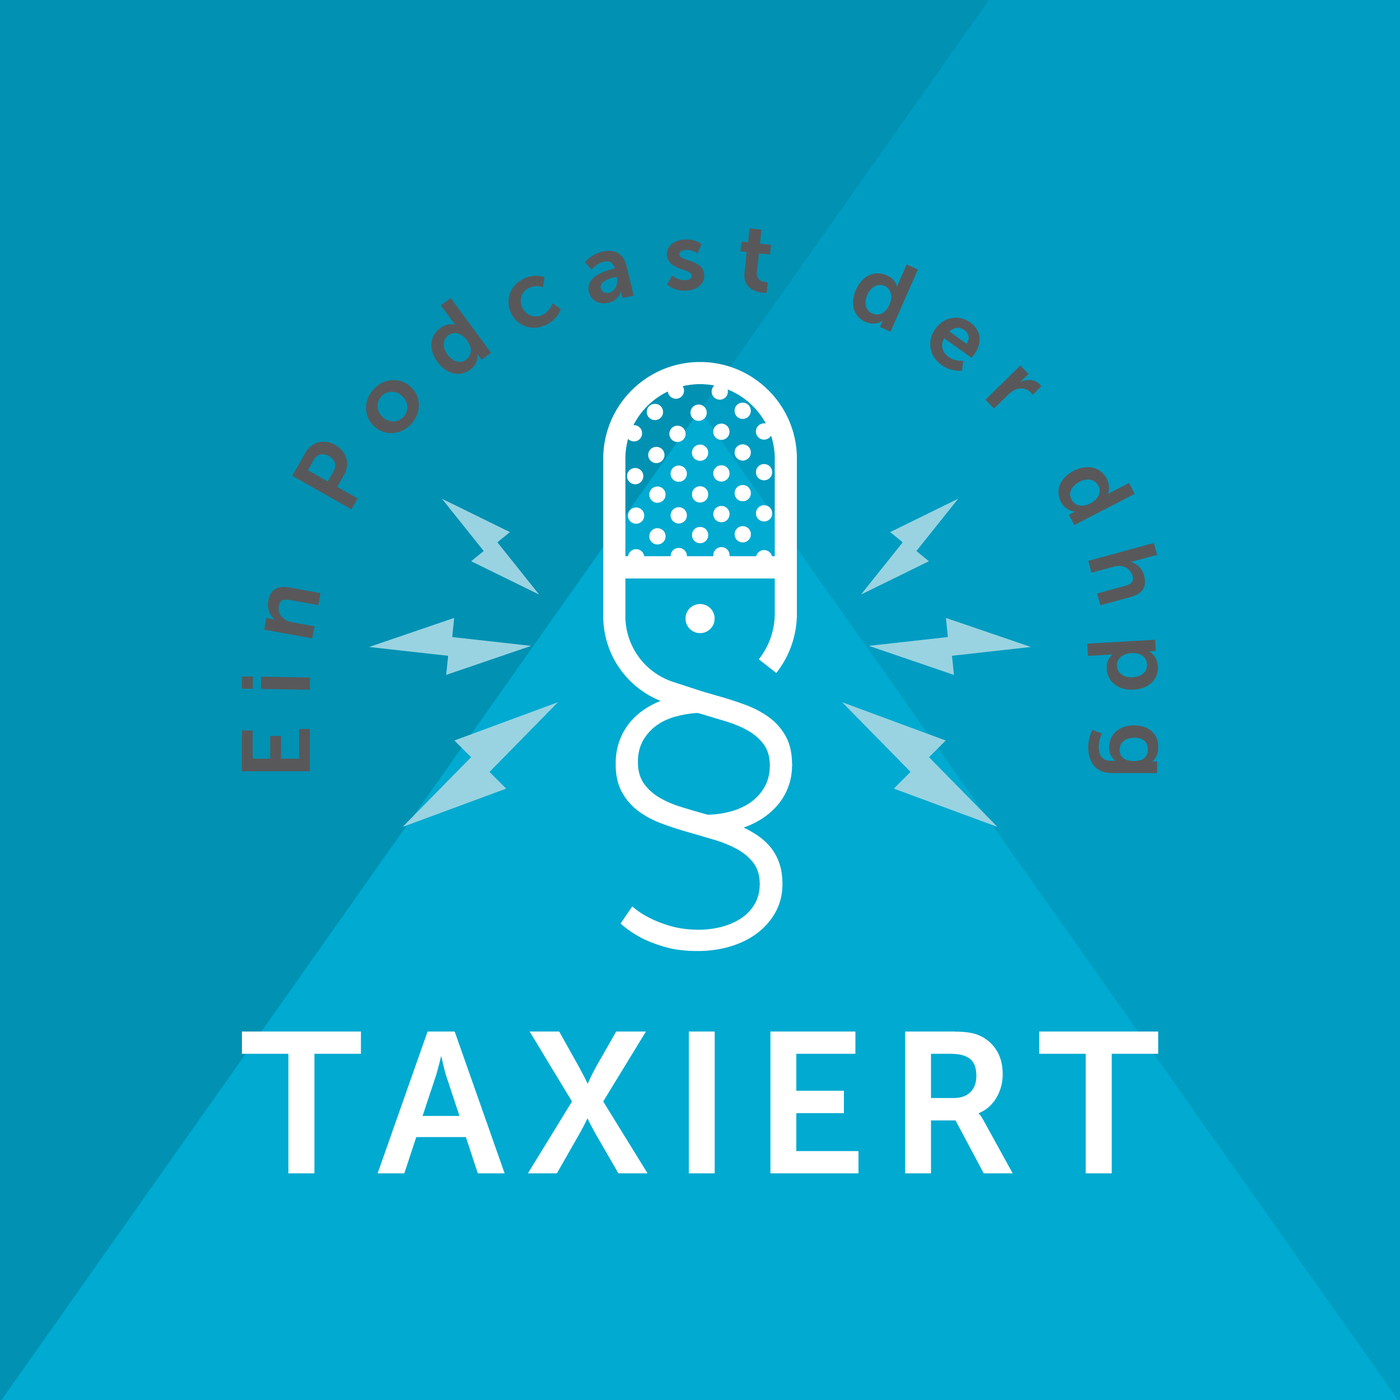 Taxiert – Der dhpg-Podcast für Steuern und Recht